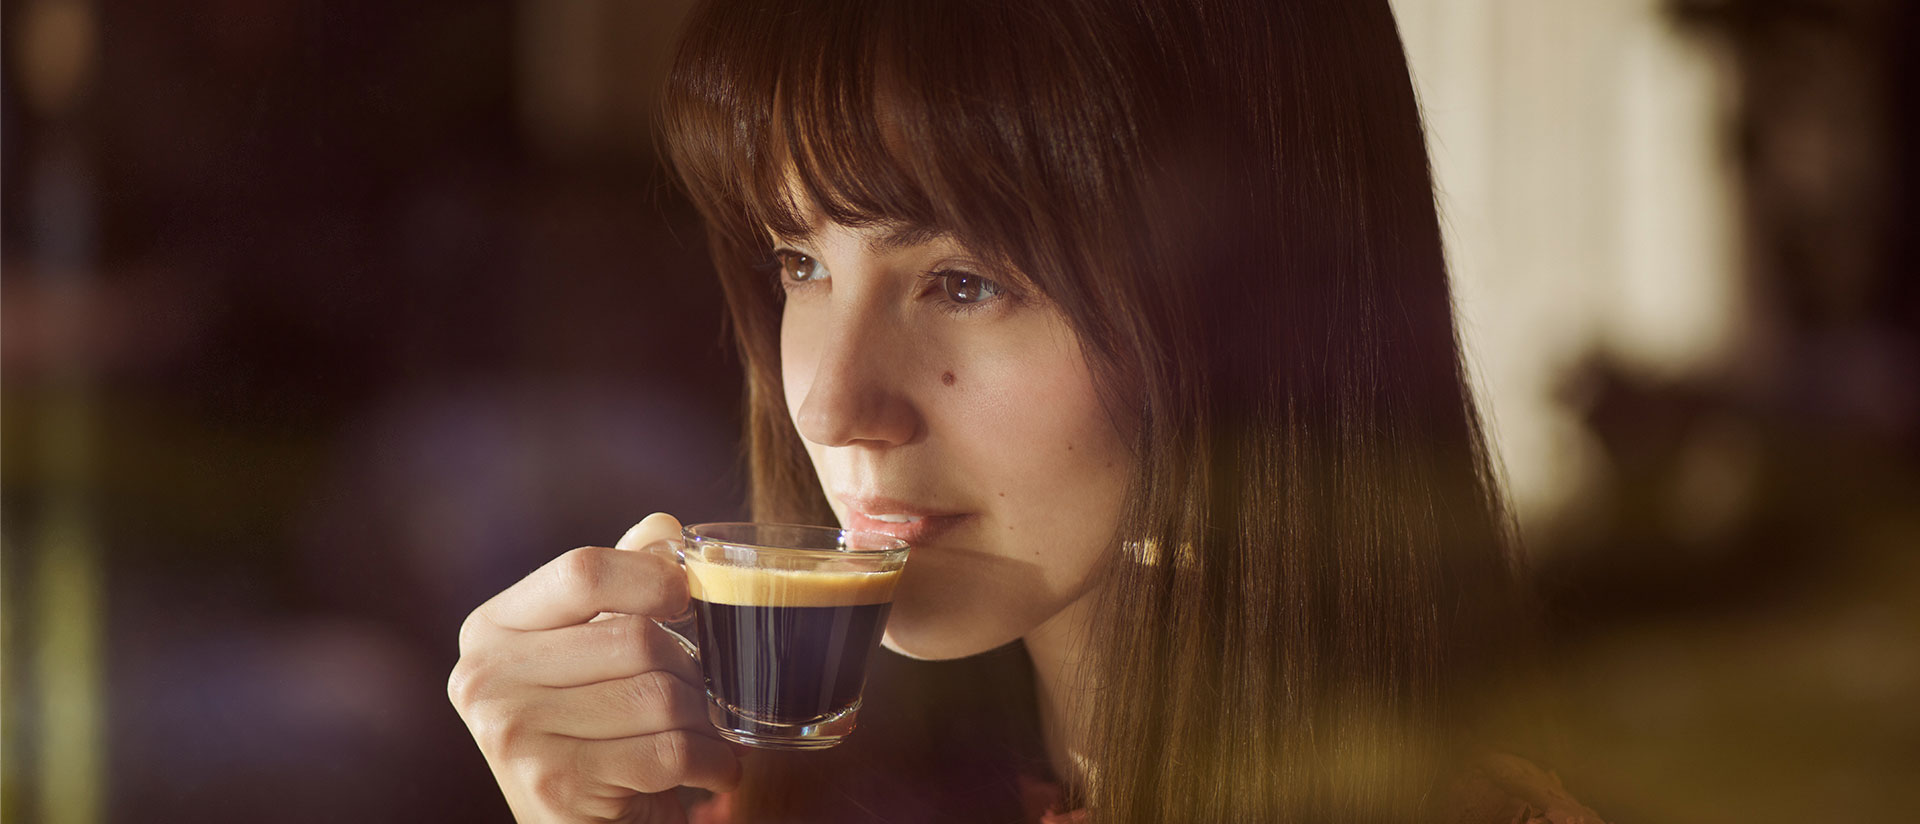 Eine Frau trinkt Kaffee aus einer Glas-Tasse.